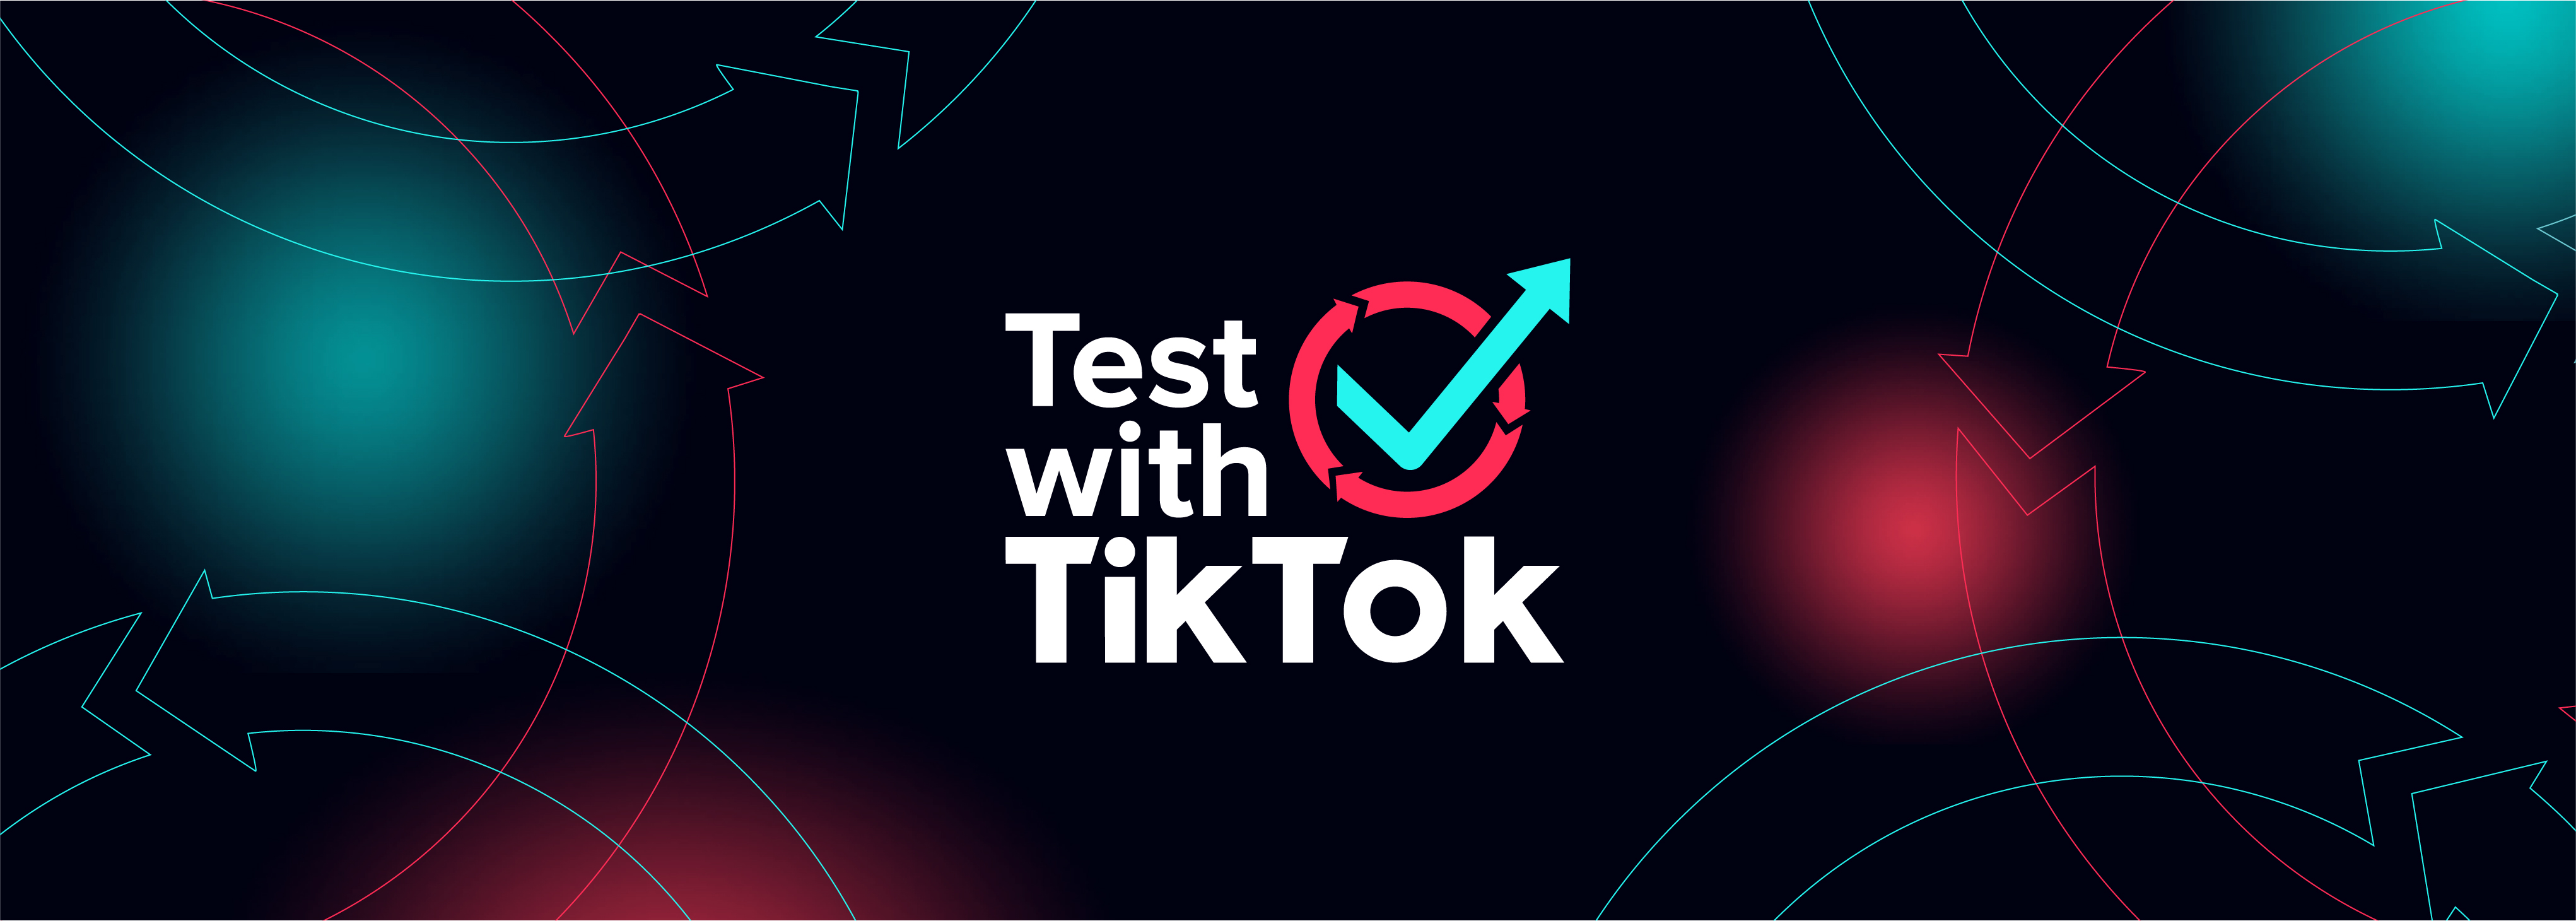 Test with TikTok Masthead FA 980x350px